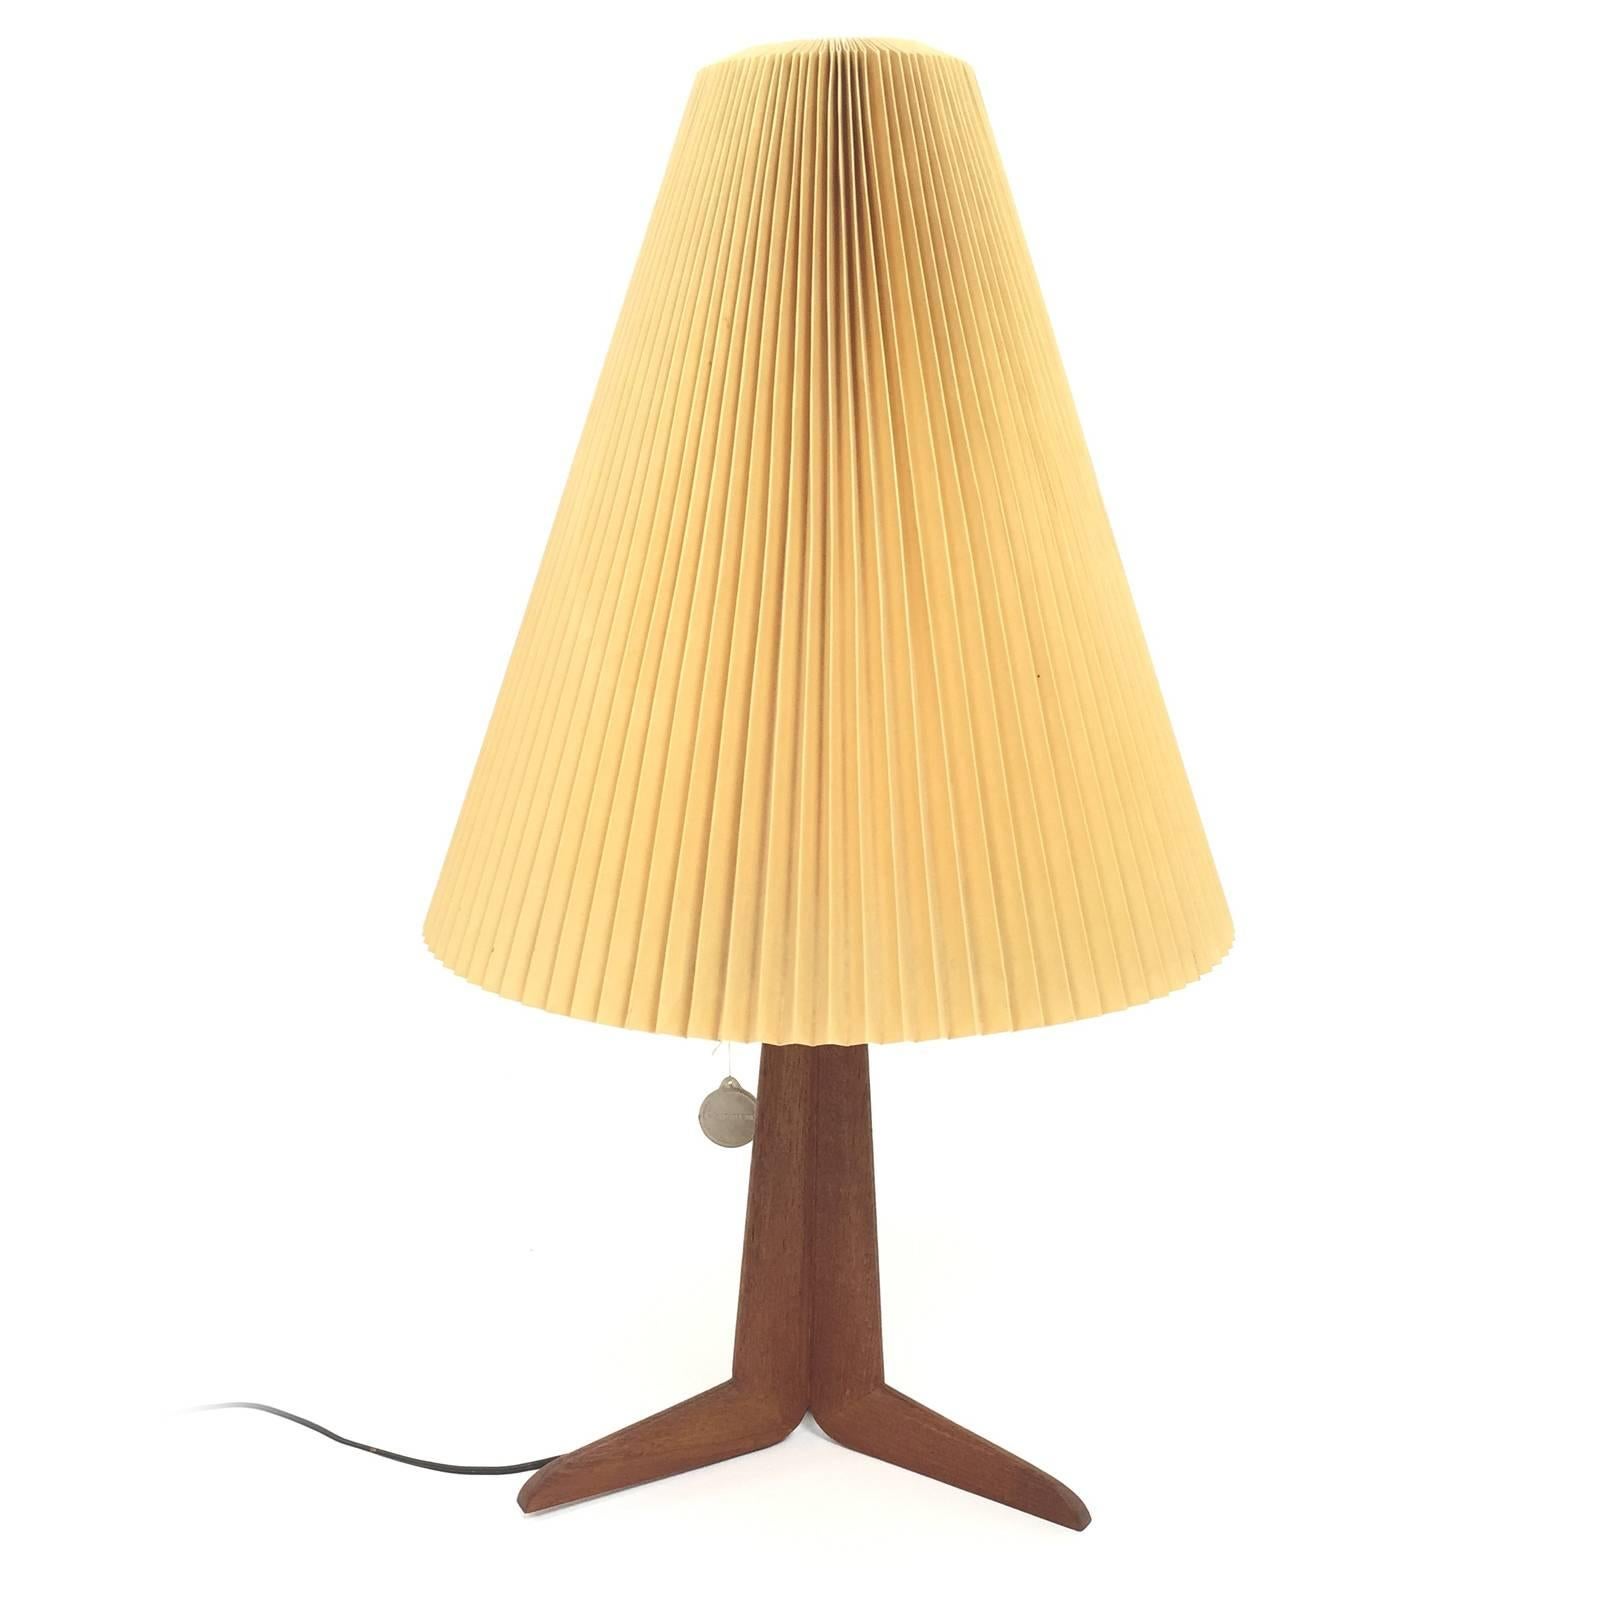 Le Klint Teak Table Lamp  For Sale